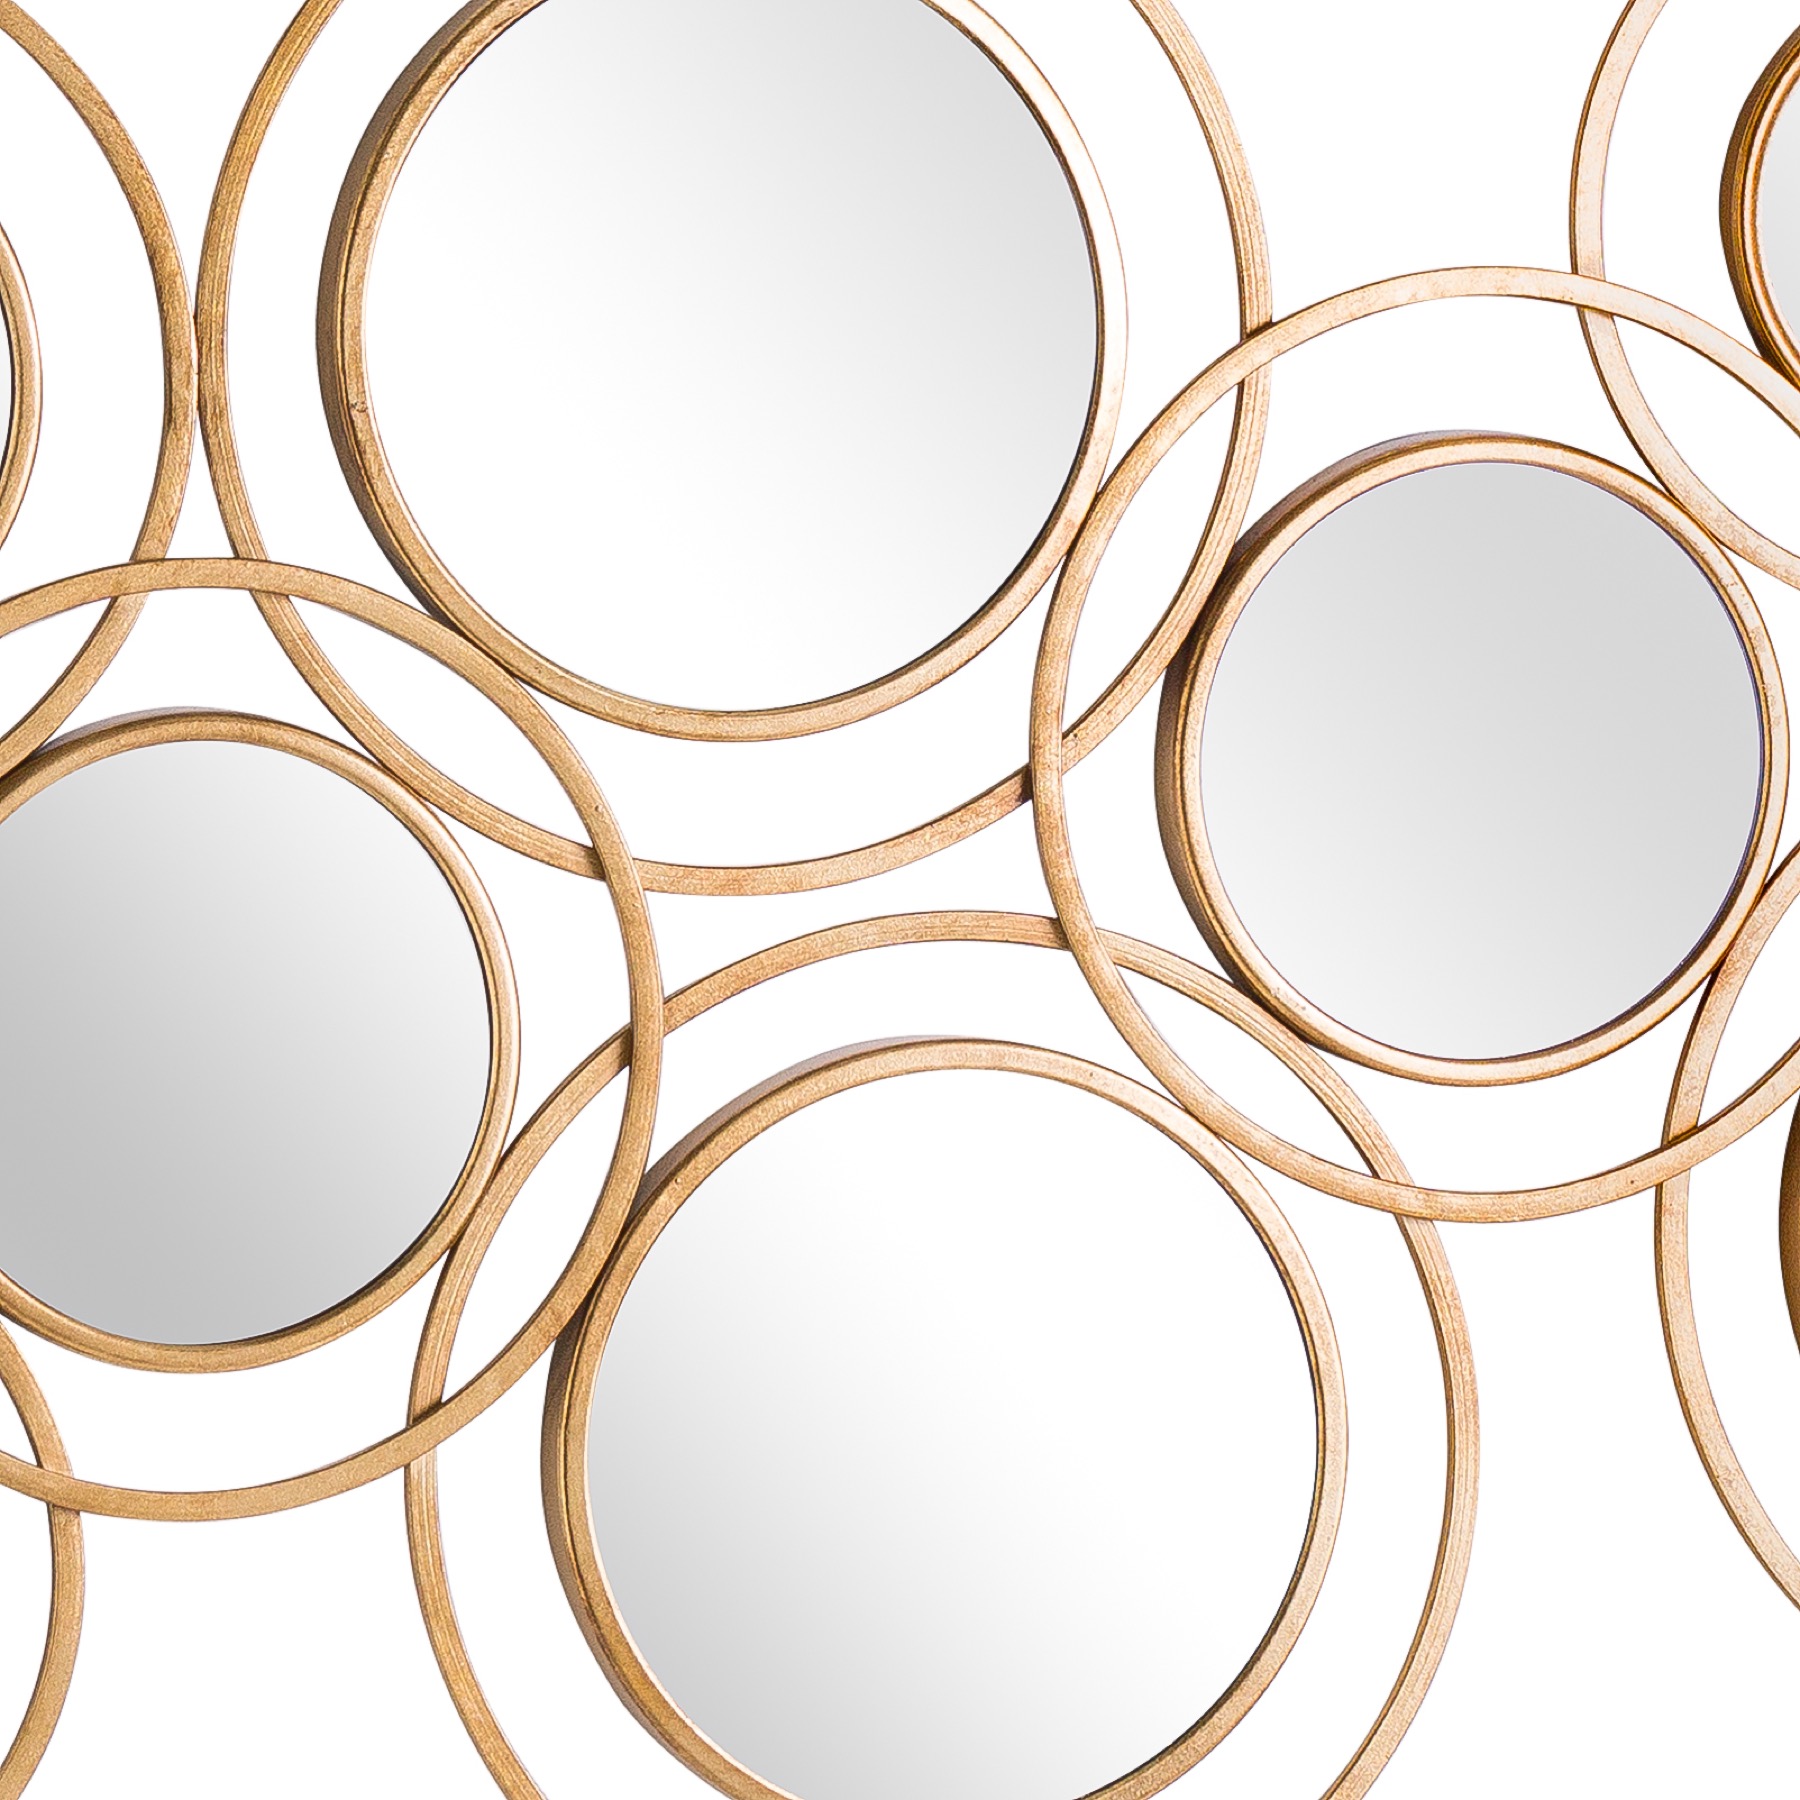 Abstract Gold Circular Wall Mirror - Image 2